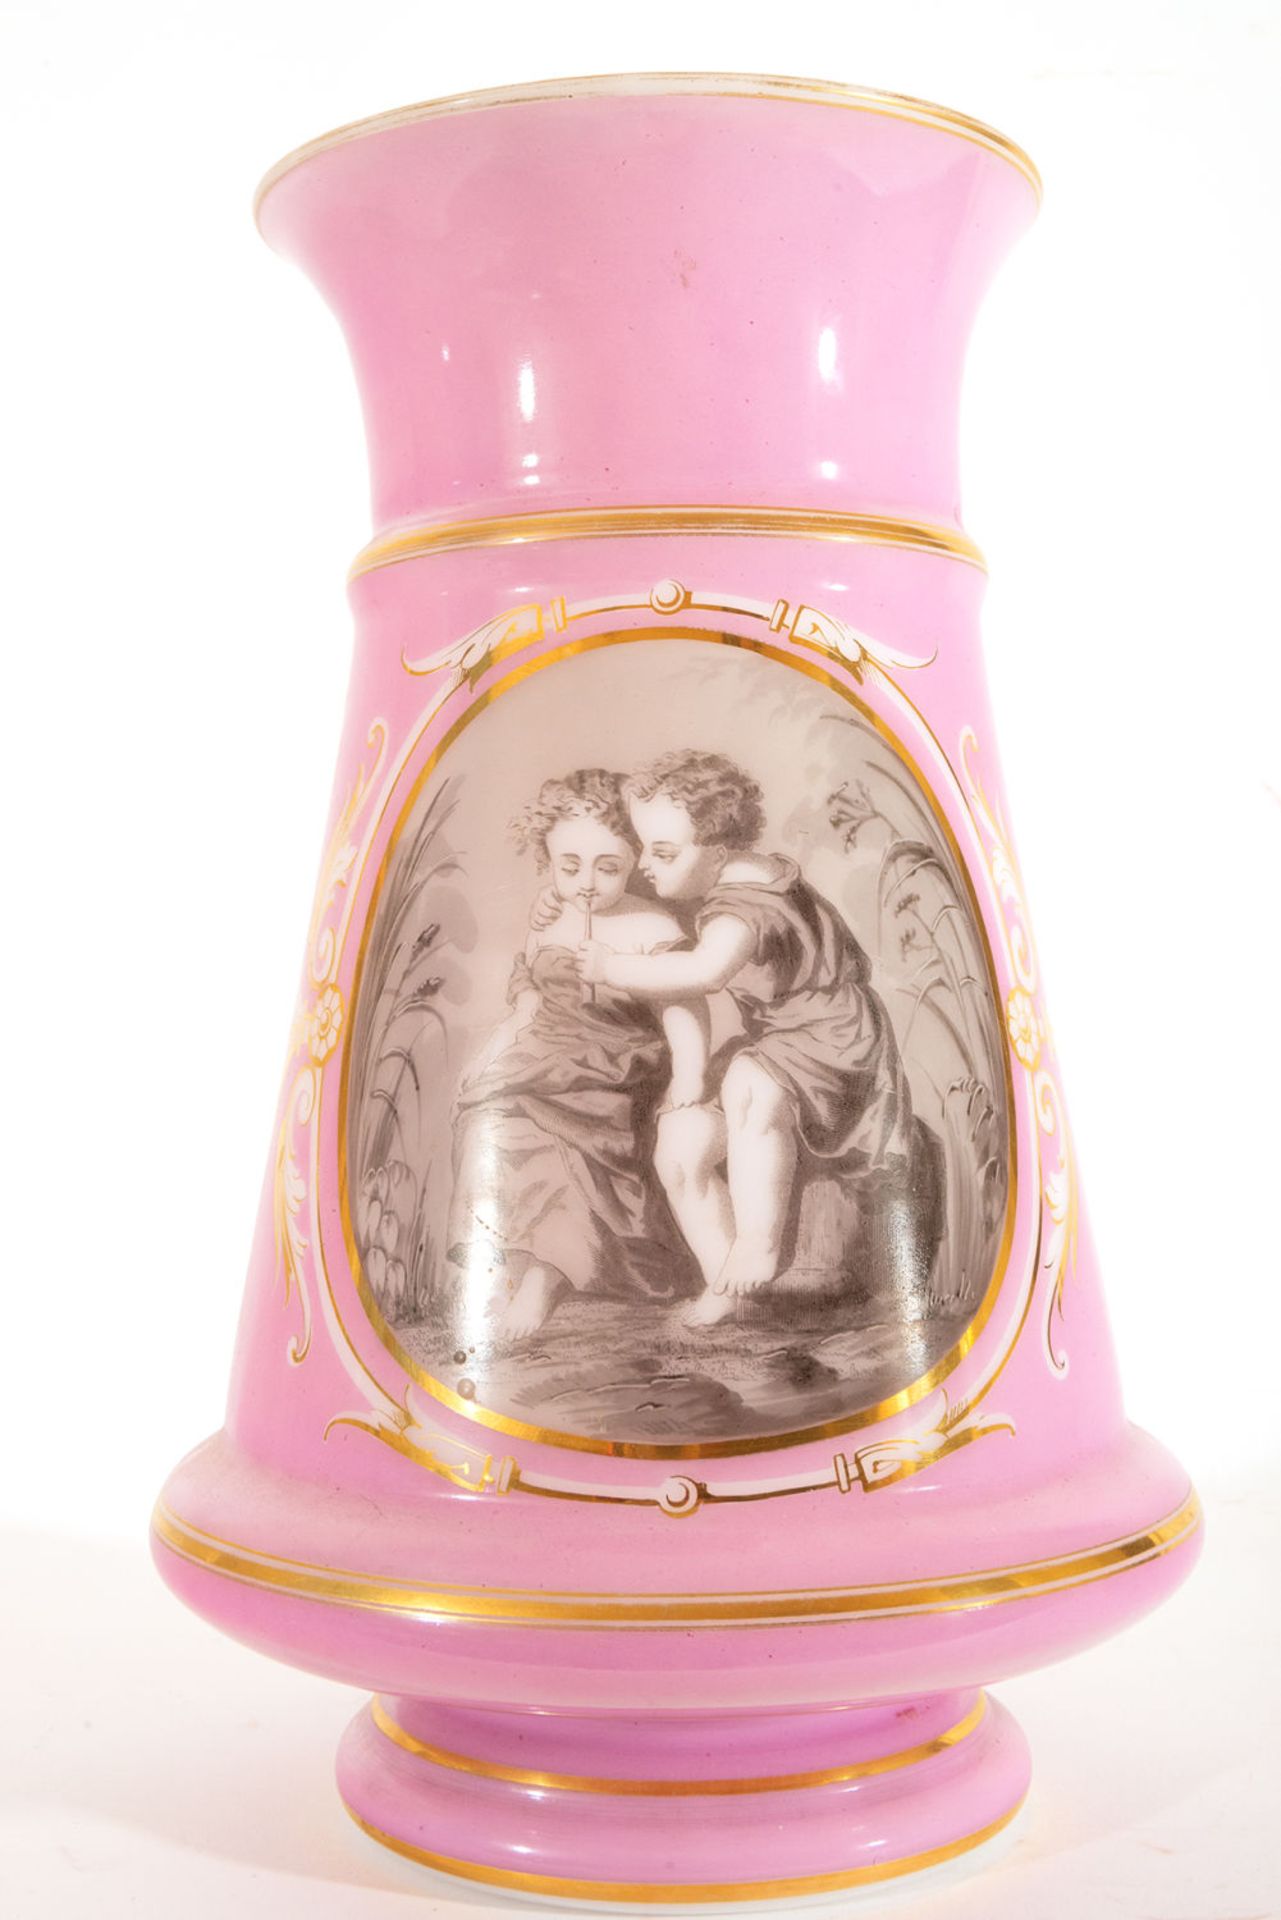 Pair of Opaline Vases with Romantic Scenes, 19th century - Bild 4 aus 10